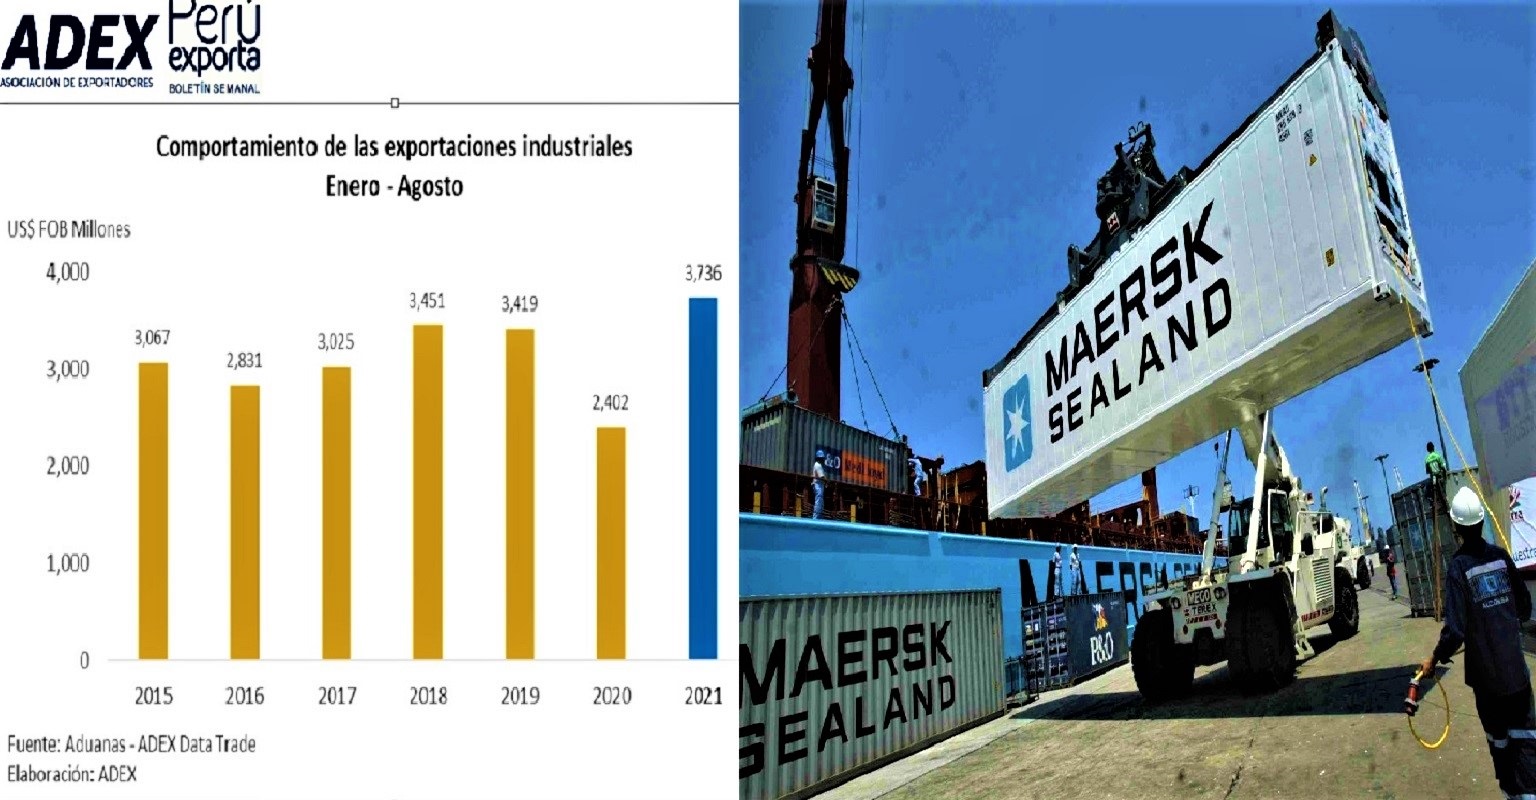 El primer gremio exportador ADEX informó que entre enero y agosto, exportaciones industriales crecieron 55.5%.